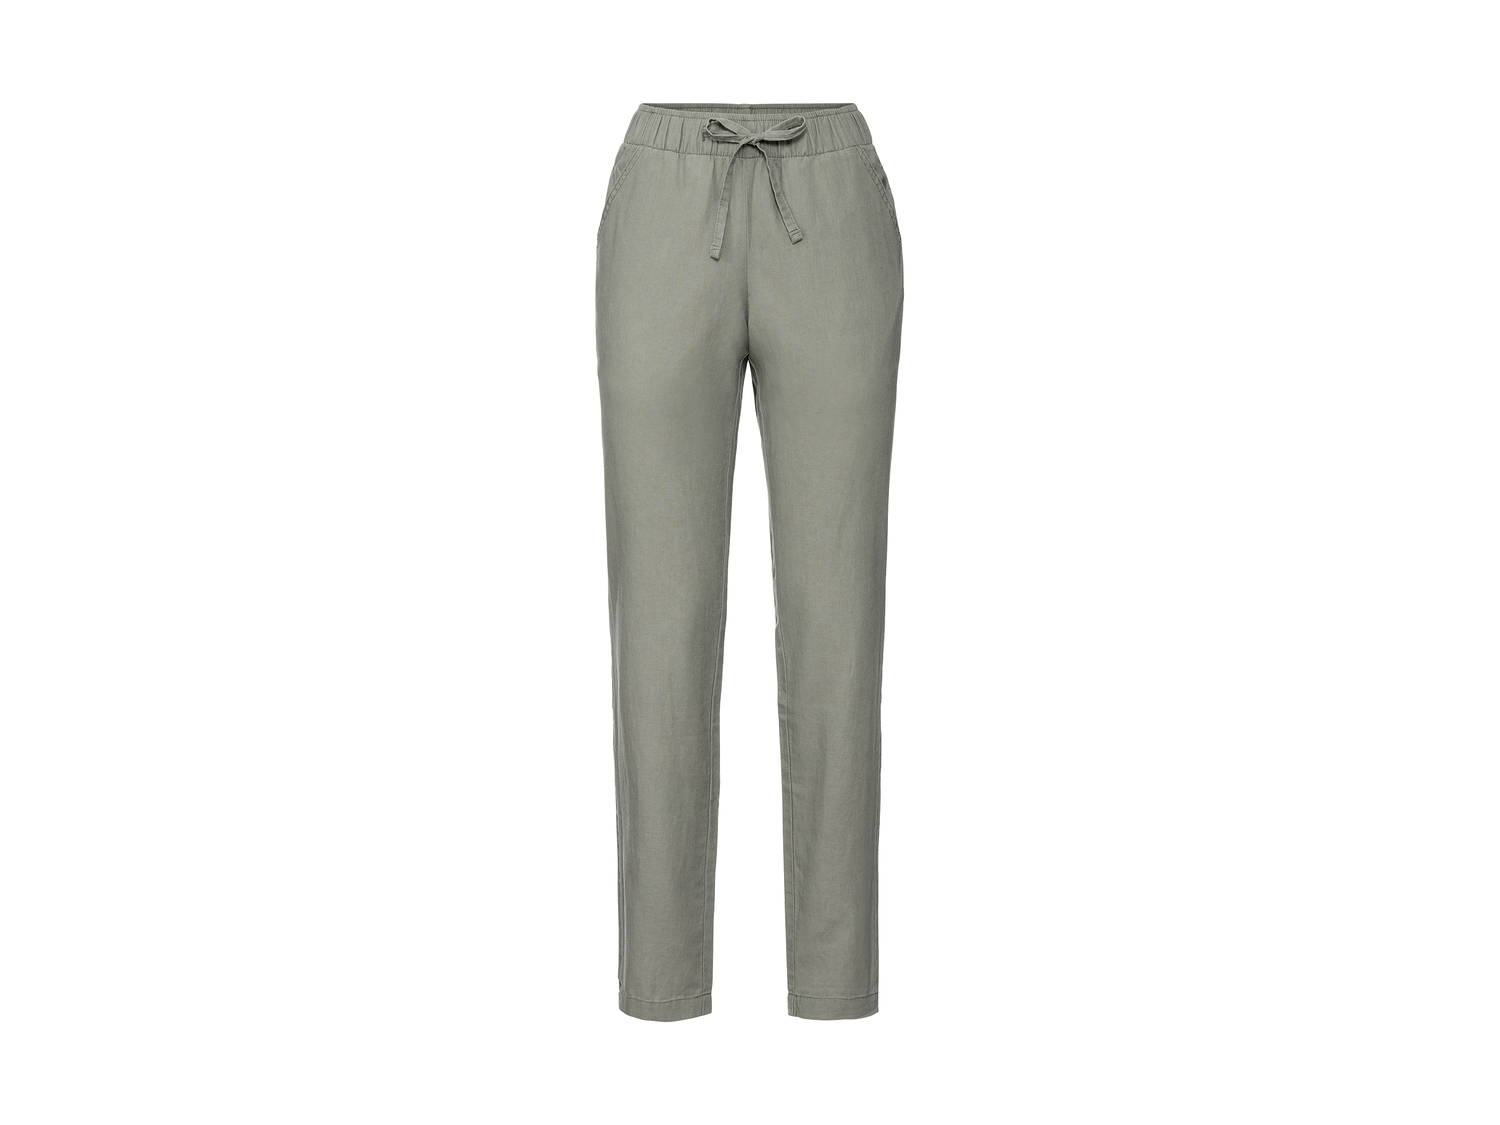 Pantalon en lin , le prix 9.99 € 
- Du 36 au 48 selon modèle.
- Ex. 55 % lin ...